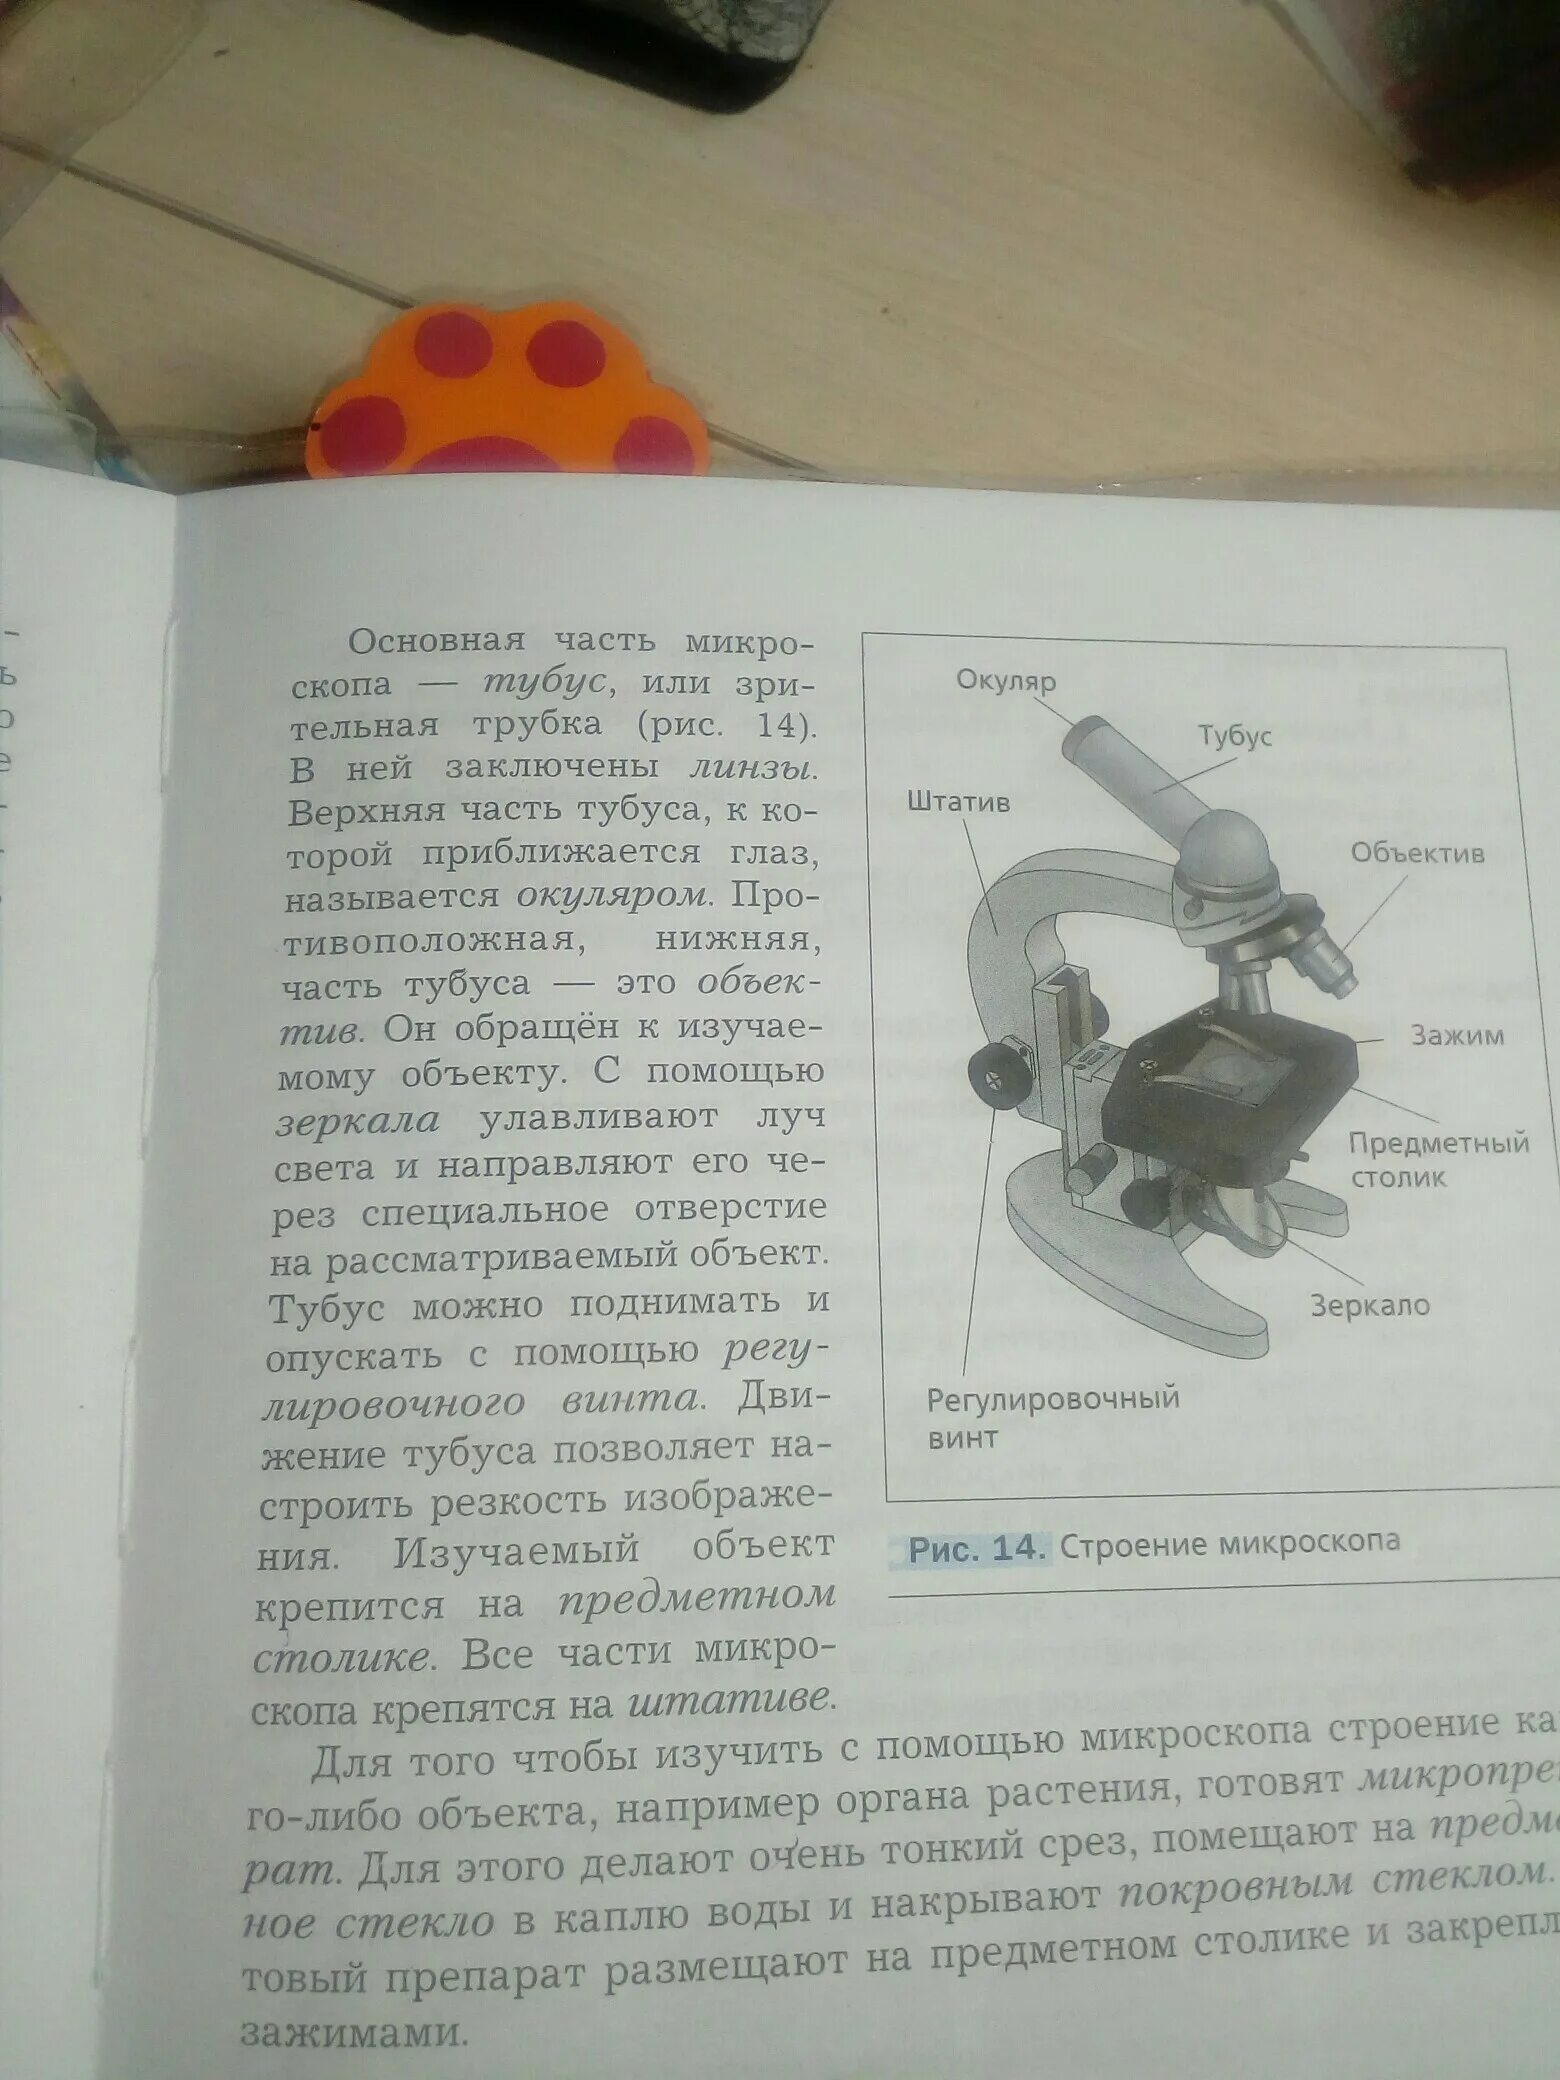 Зачем микроскопу тубус. Функция предметного столика в микроскопе. Тубус микроскопа. Линзы в тубусе микроскопа. Тубус, окуляр, штатив., объектив часть микроскопа.